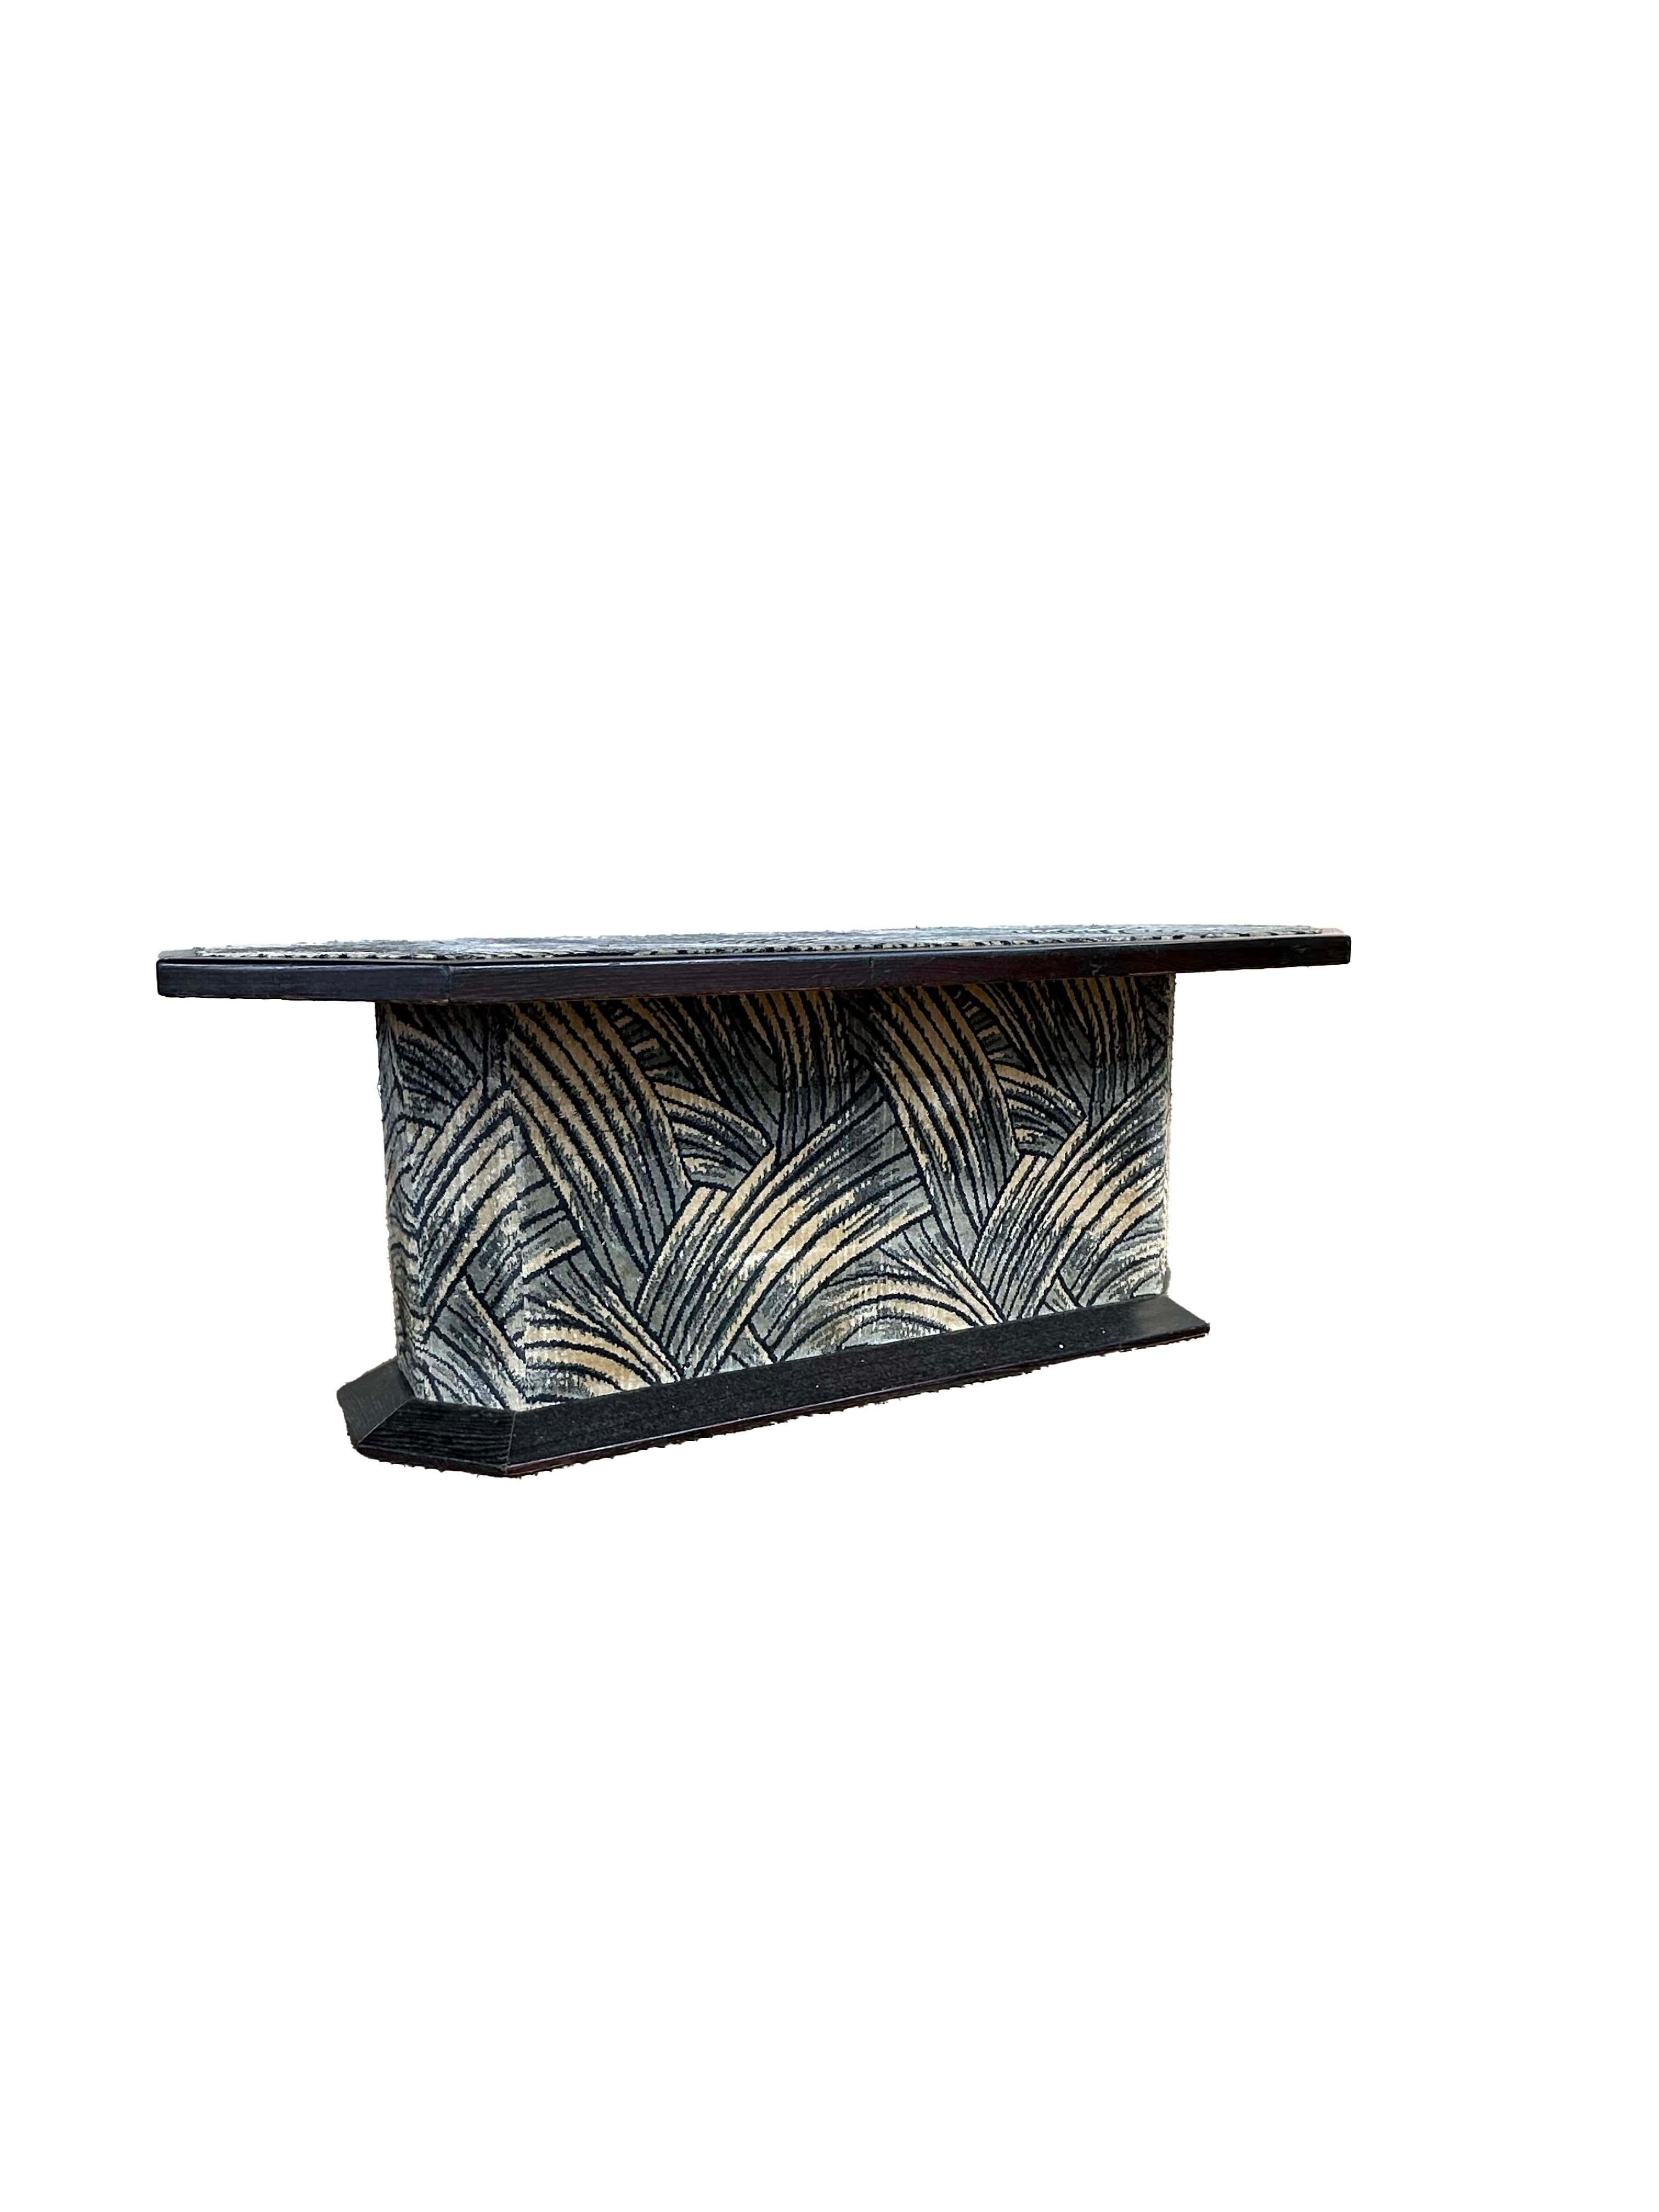 Table basse octogonale Pierre Cardin des années 1970.
Velours bleu et or à motifs de feuilles de palmier. Finition avec un bord en bois massif laqué noir.
L'insigne en métal Pierre Cardin est posé sur le socle.
Cette pièce est parfaite et semble